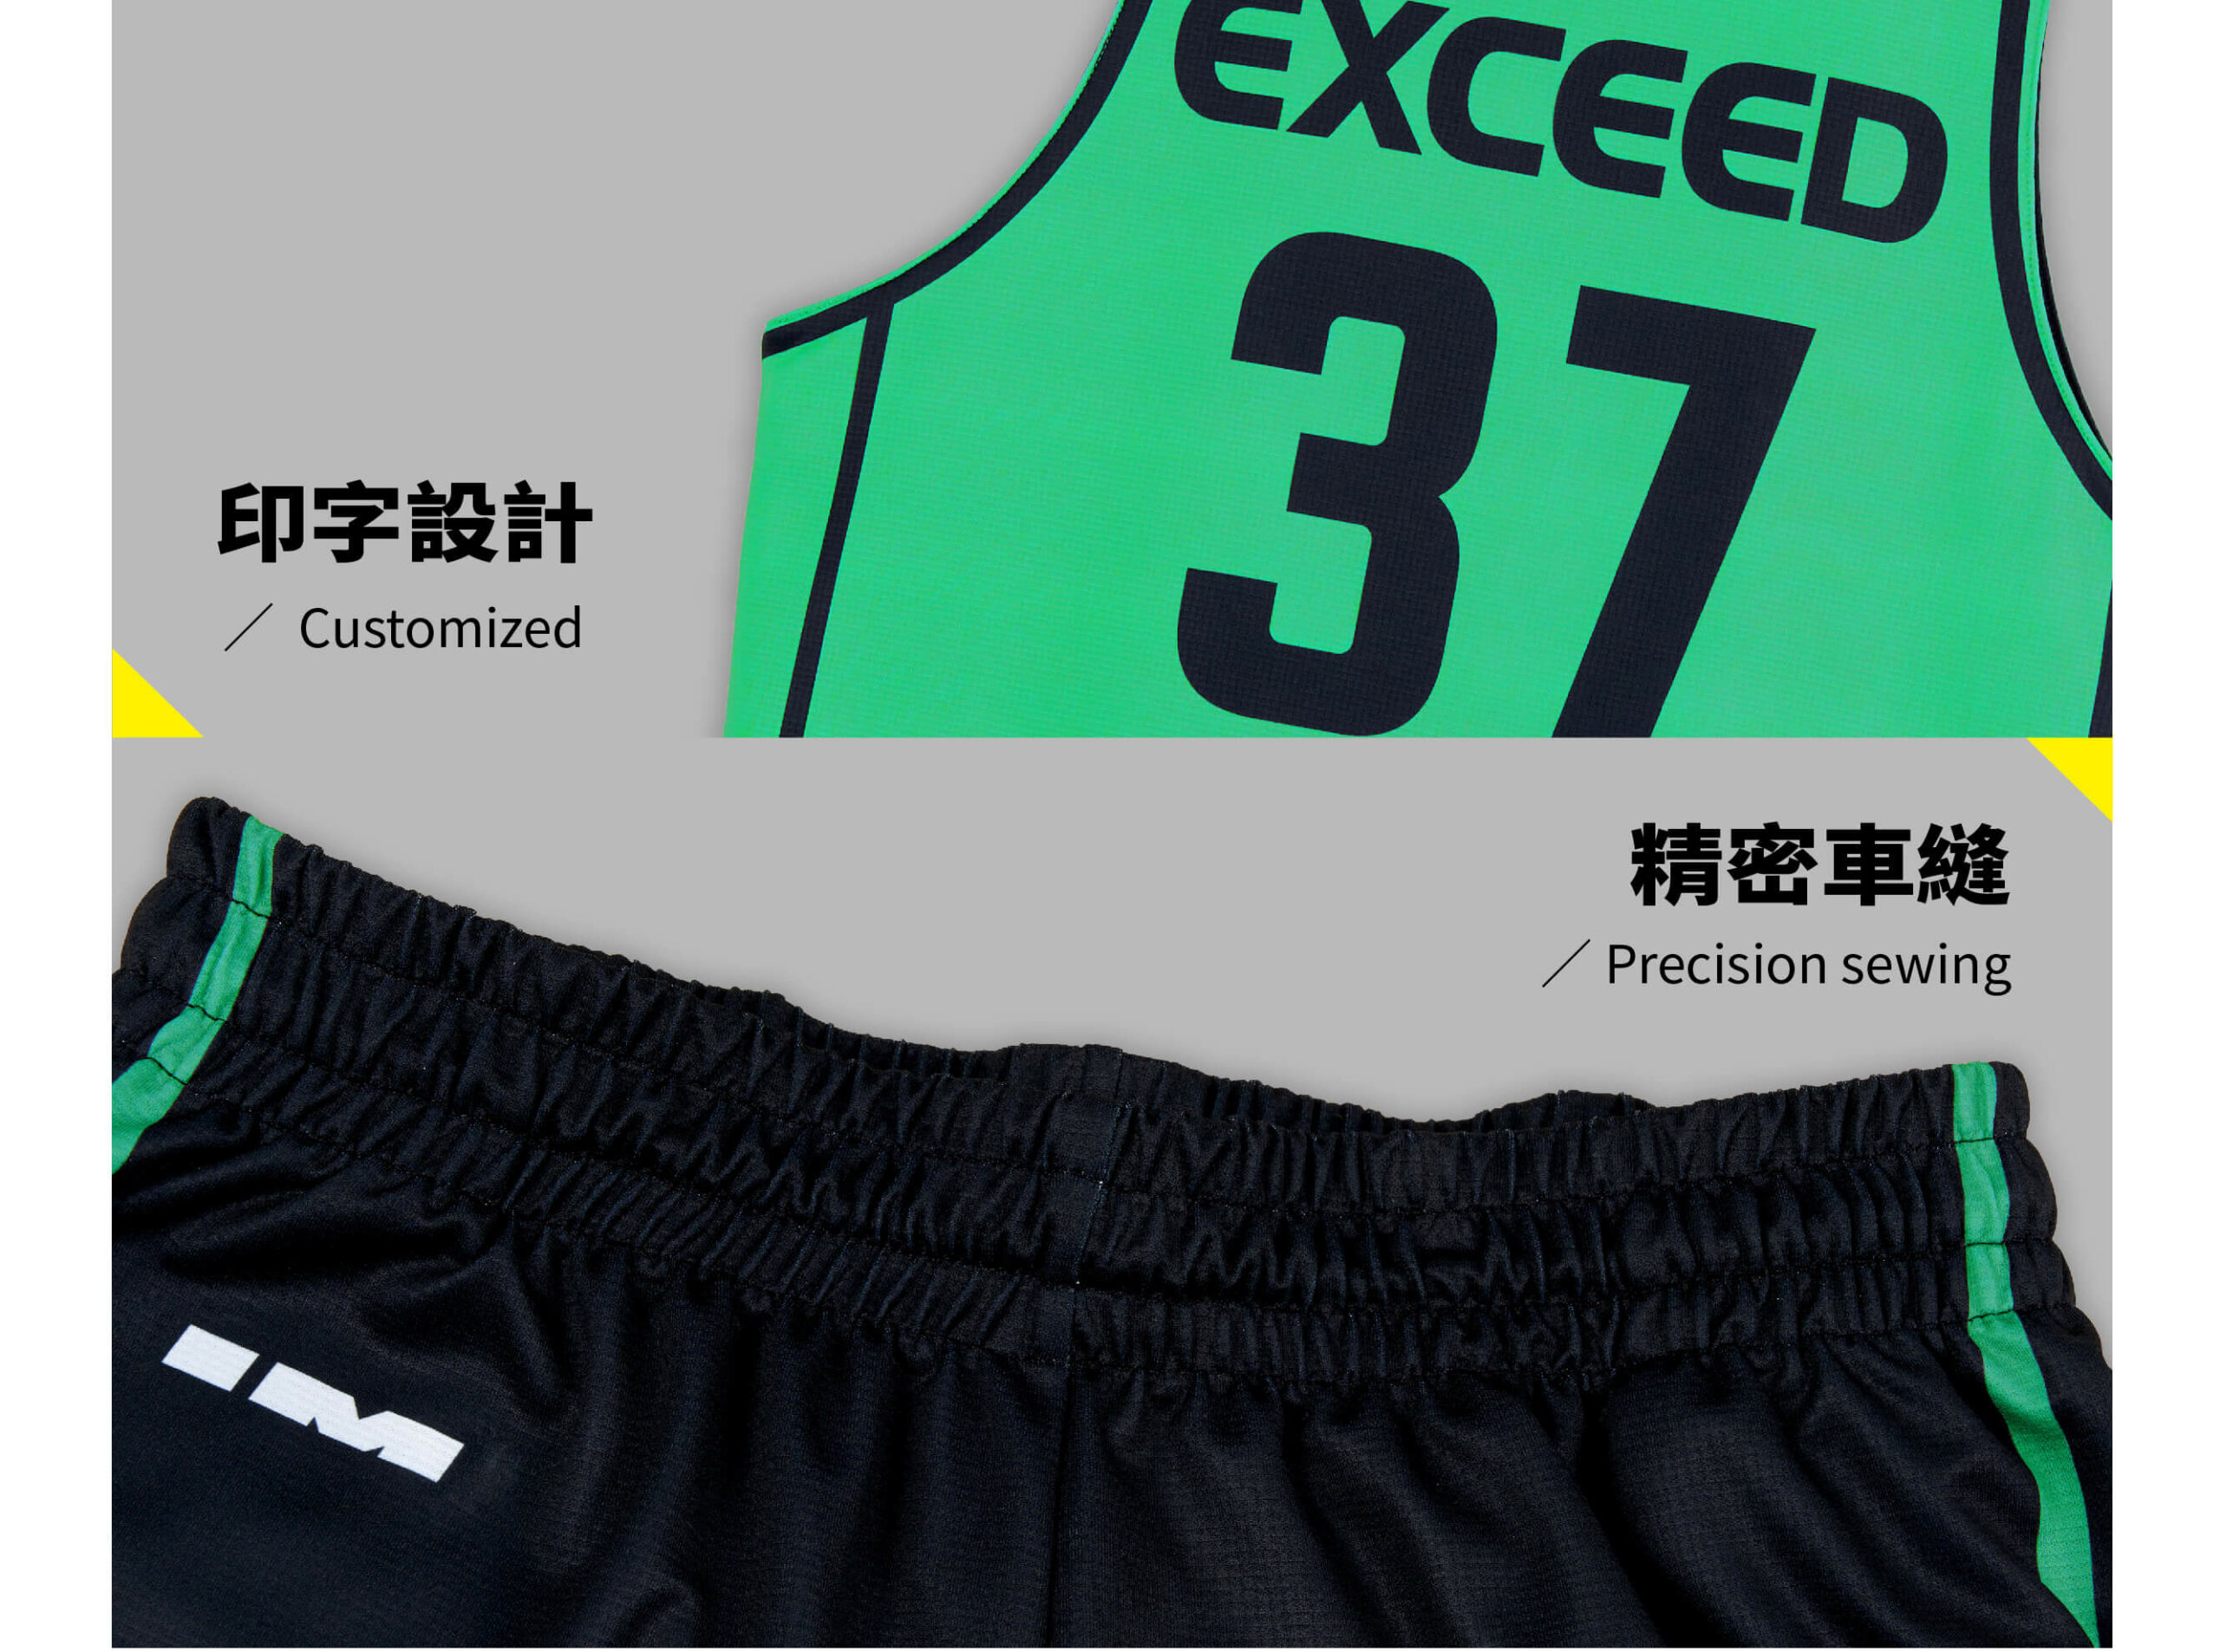 imbc-籃球-客製化籃球衣-籃球服-球衣訂製